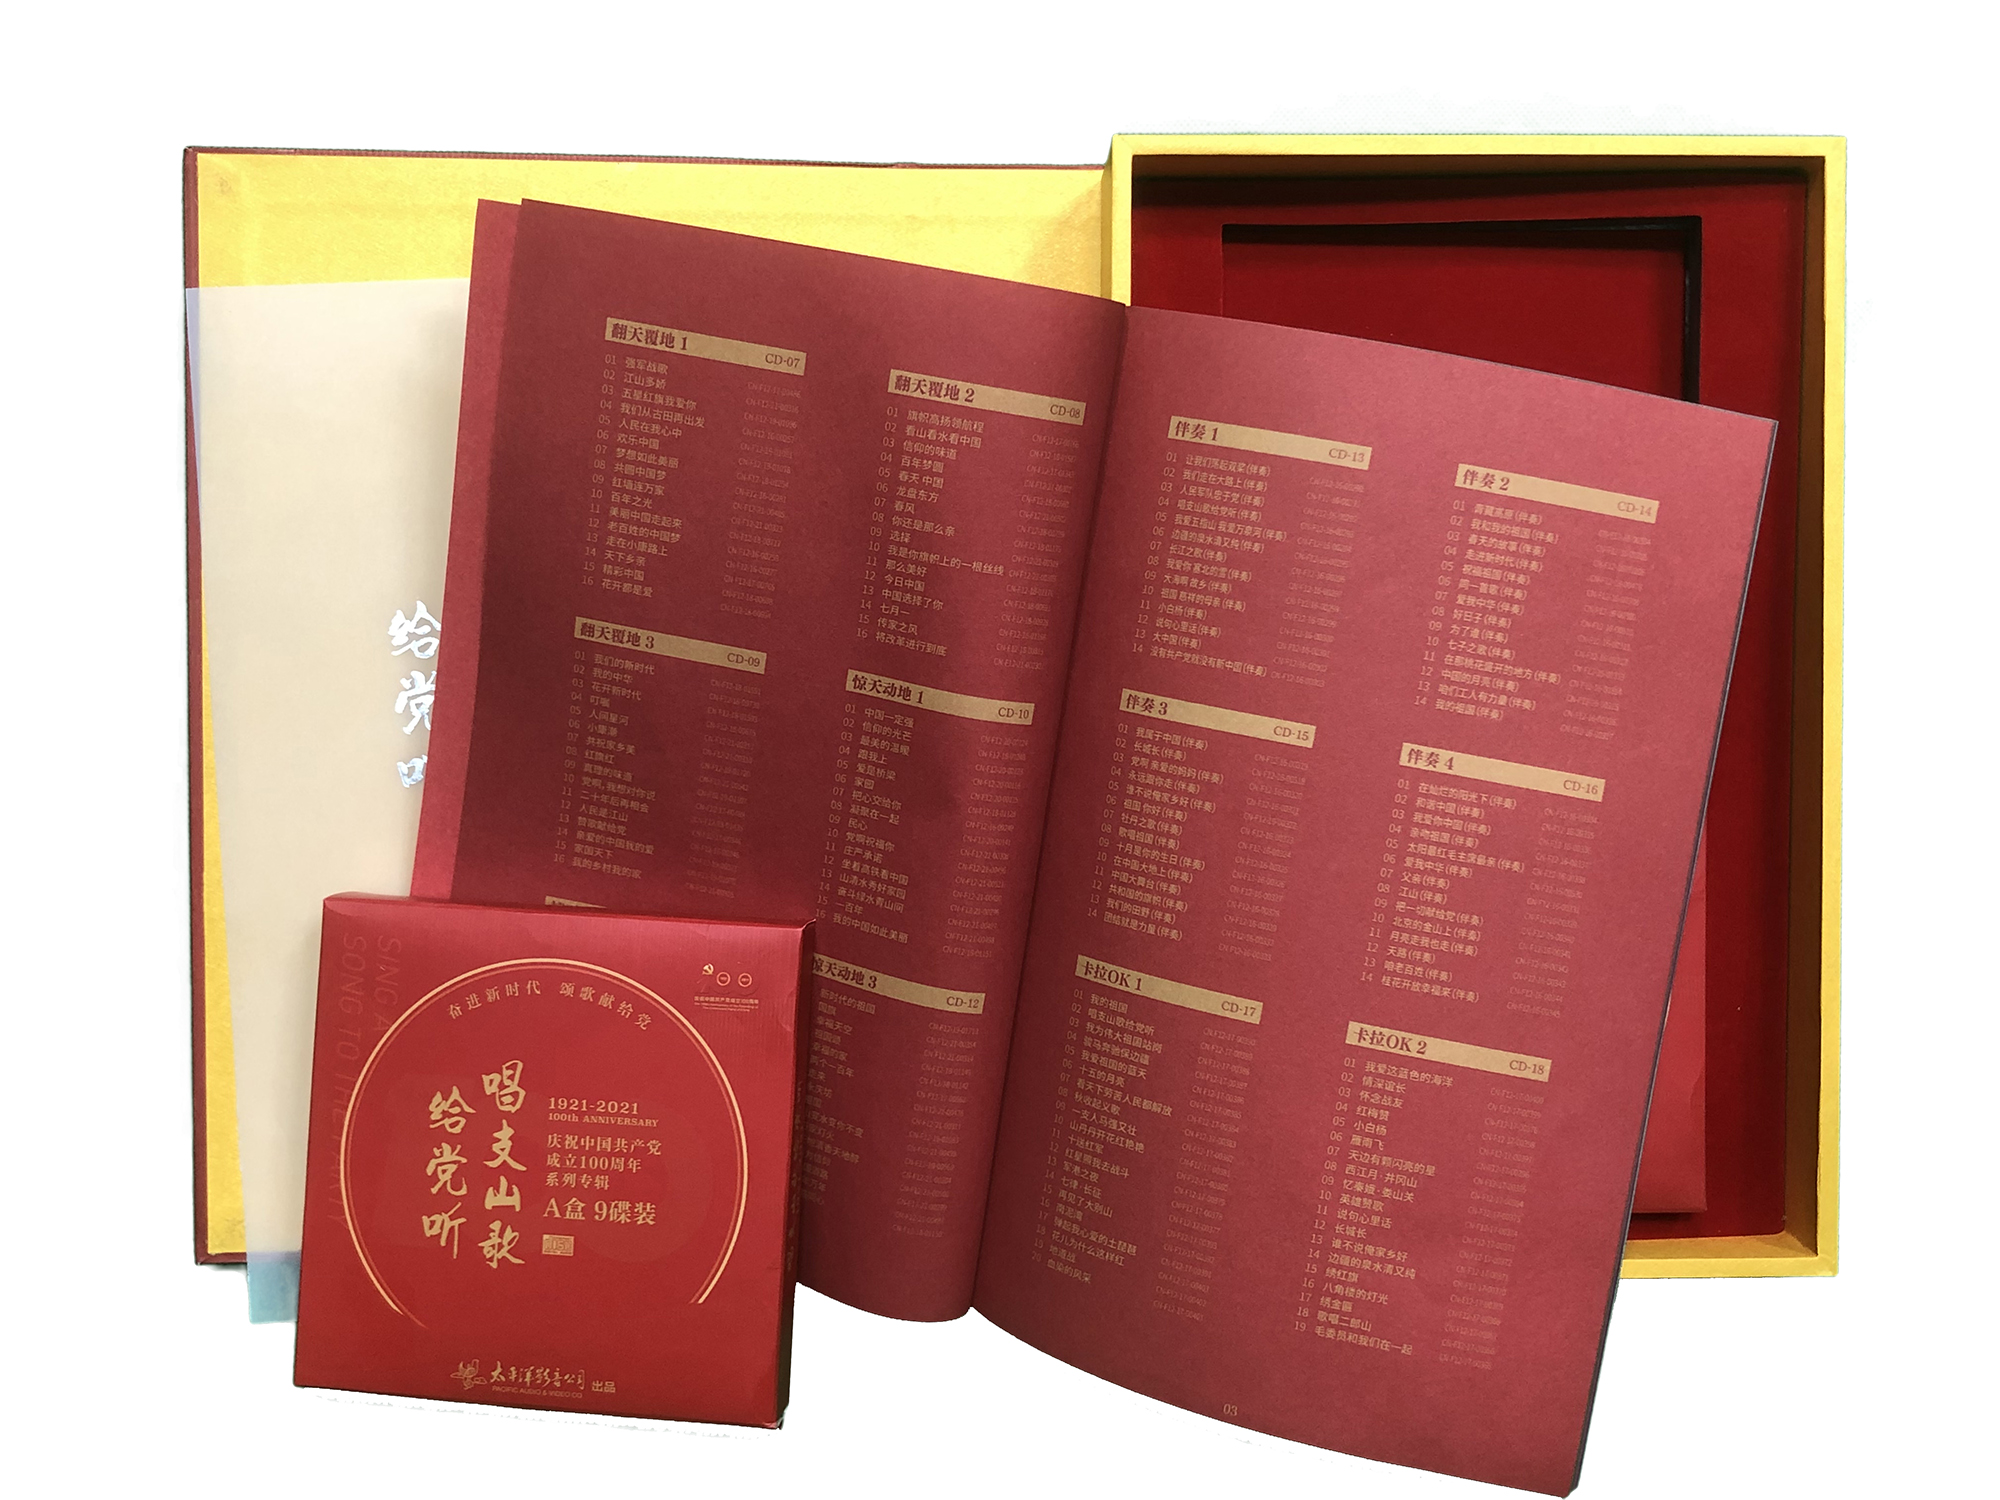 红旗红 百年之光 入选庆祝中国共产党成立100周年系列专辑